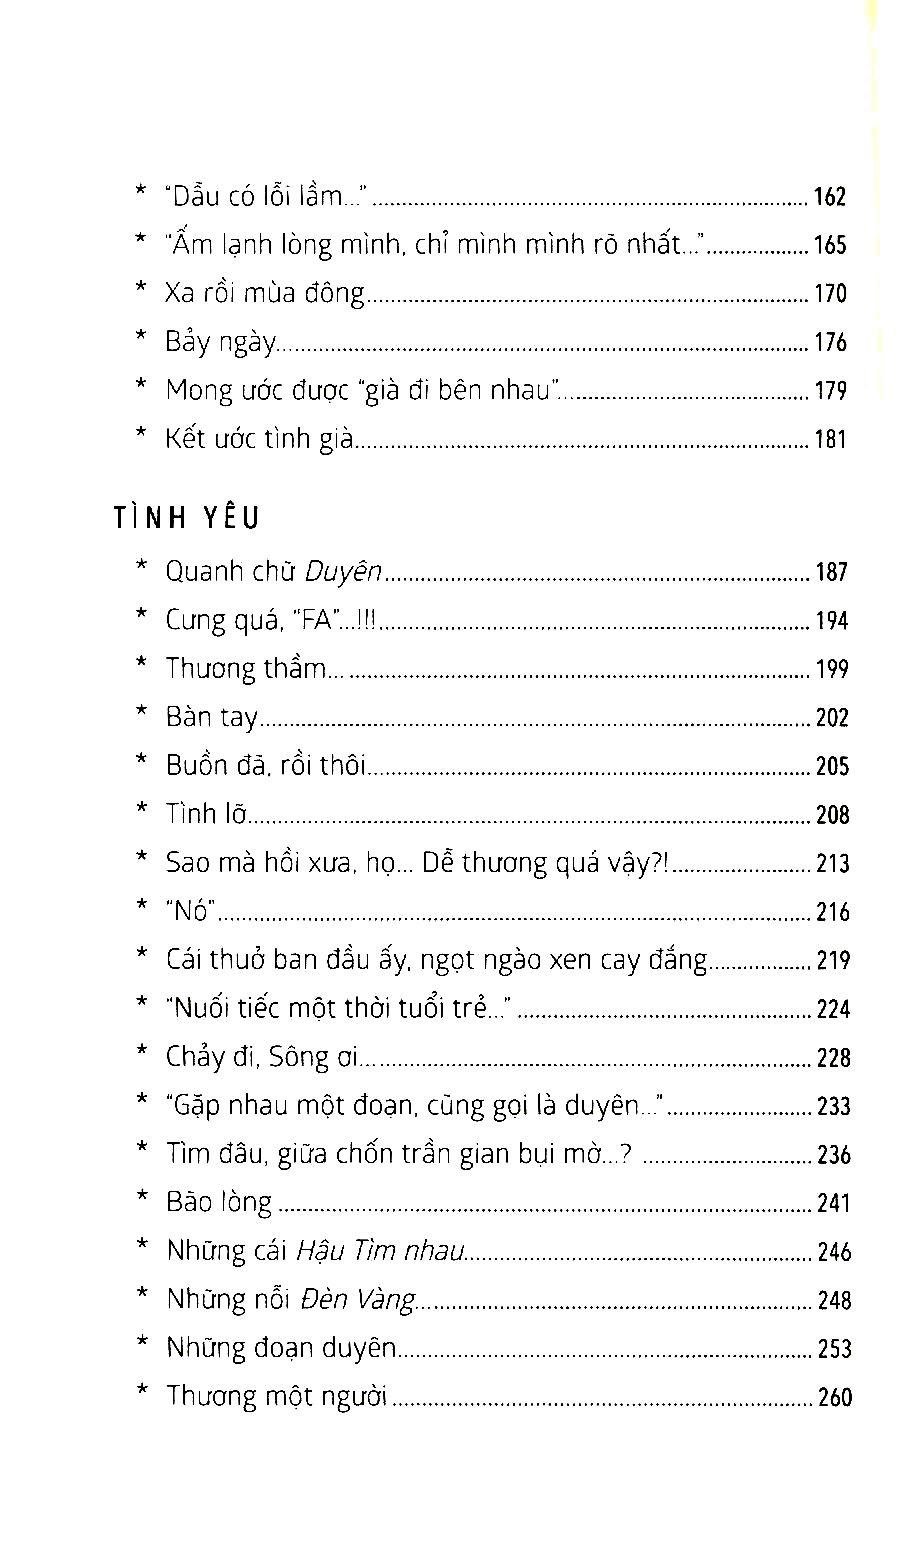 Thay Lời Muốn Nói - Thanh Xuân Tôi... - Kèm Chữ Ký Tác Giả Số Lượng Có Hạn PDF